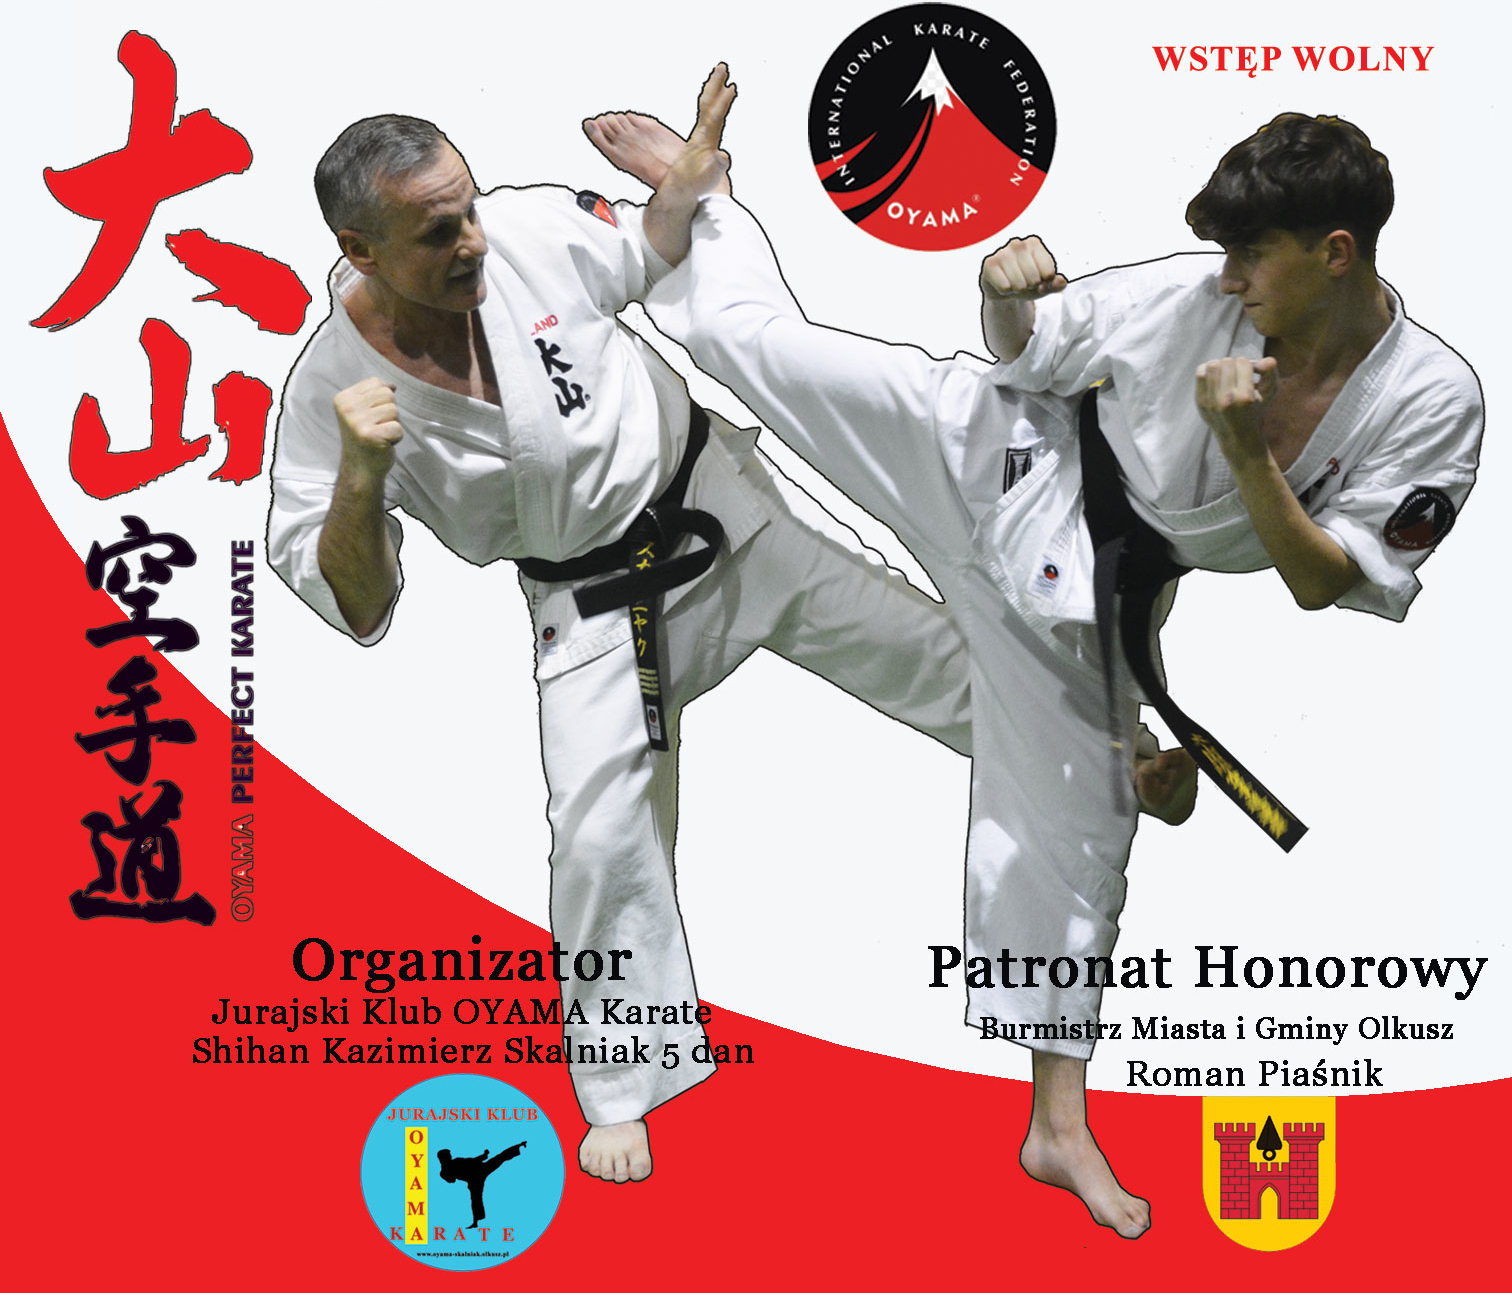 Plakat promujący Otwarte Mistrzostwa Makroregionu Południowego Oyama PFK w Kumite i Kata